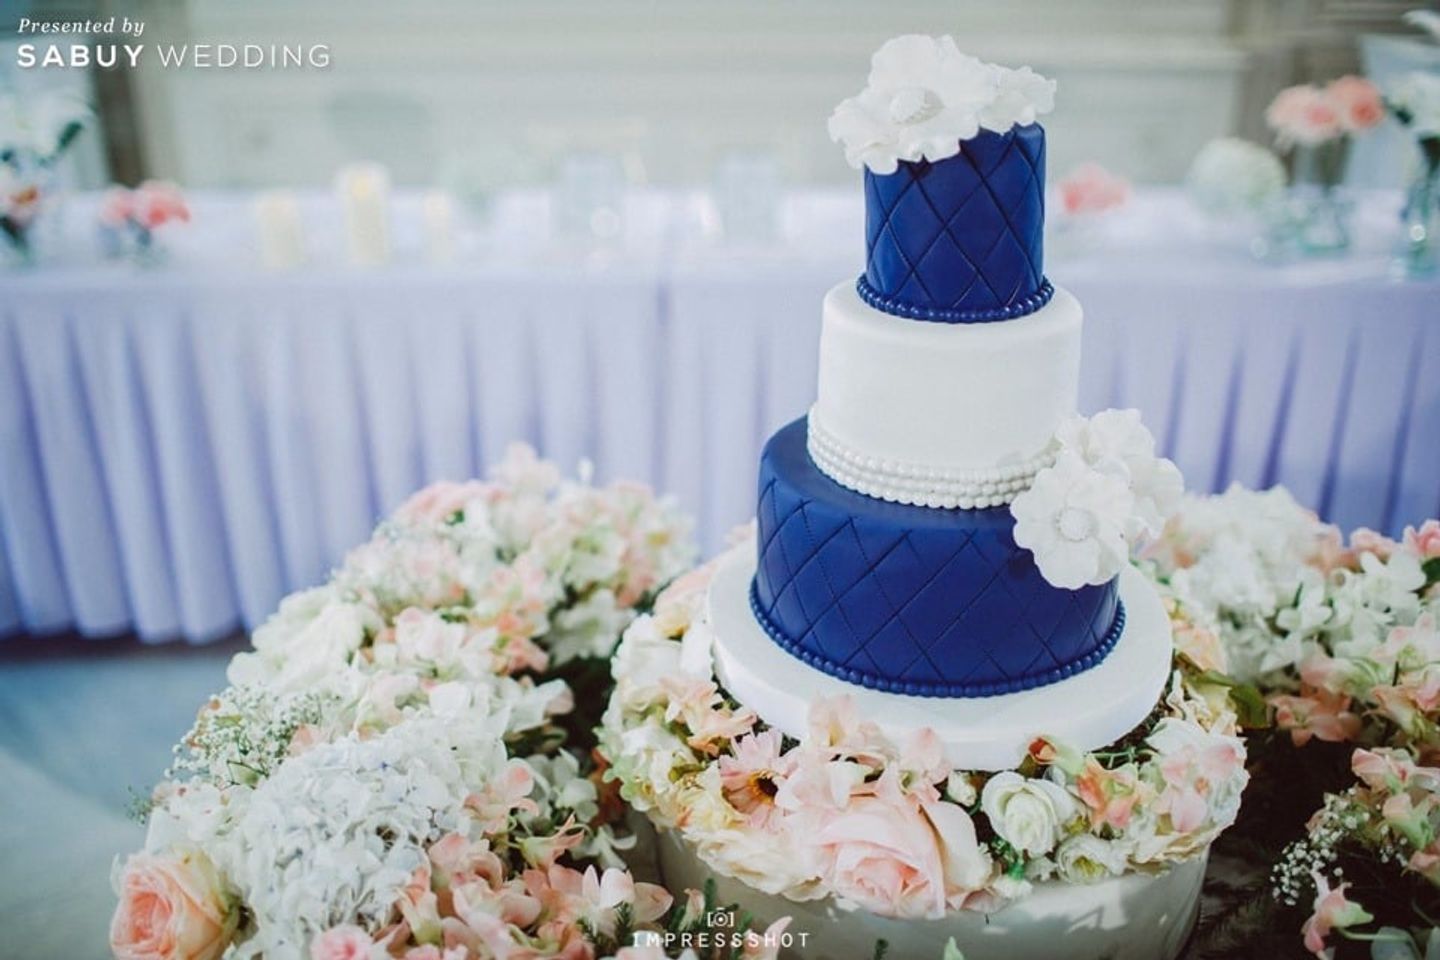 เค้กงานแต่ง,ตกแต่งงานแต่ง,จัดดอกไม้งานแต่ง รีวิวงานแต่งสวยหรูด้วย Long table หวานซึ้งสื่อรักดอกลาเวนเดอร์ @Bangkok Garden Studio